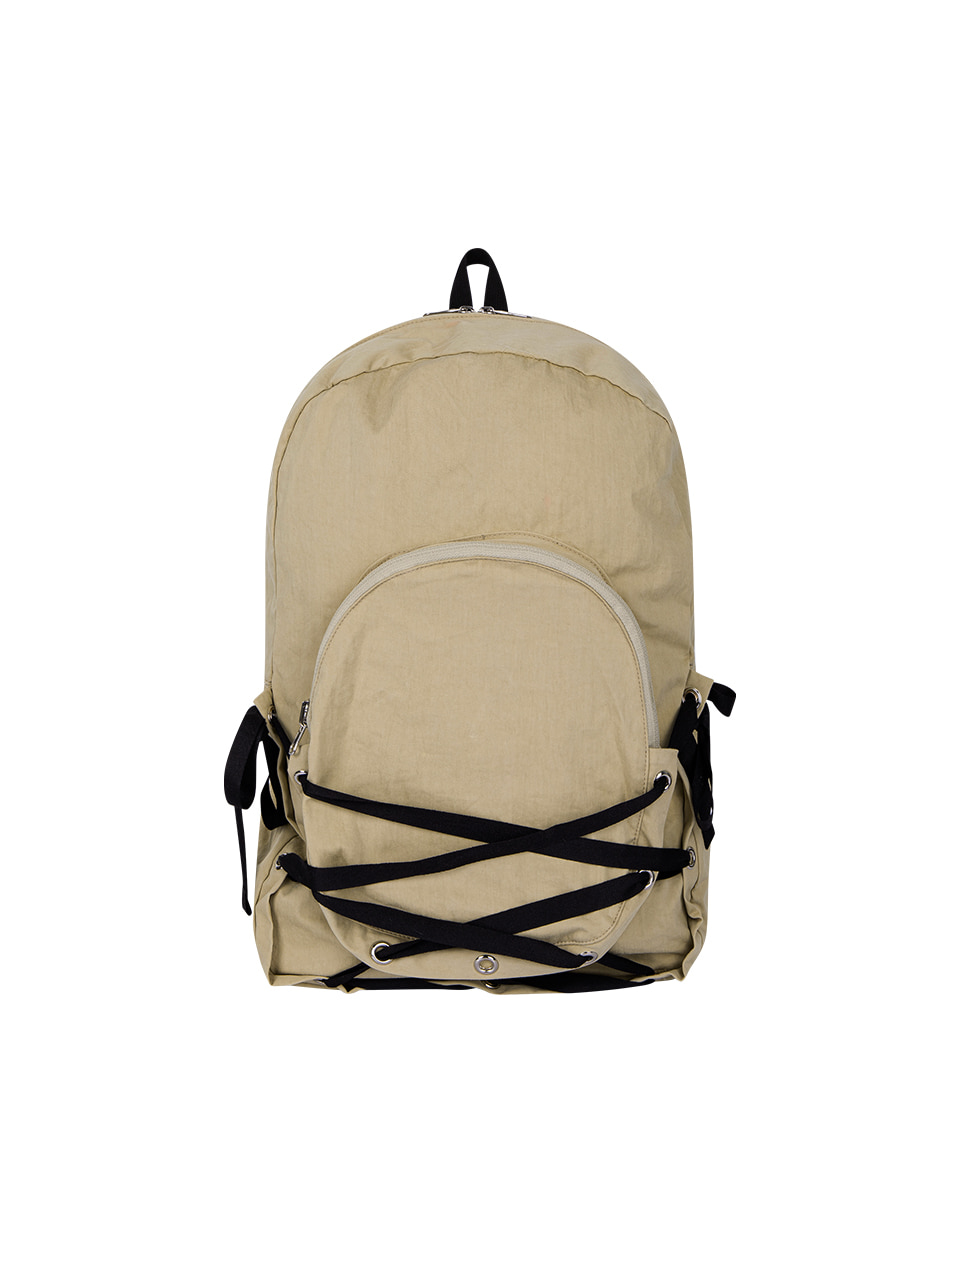 무음 Nest Backpack (Sand Beige)